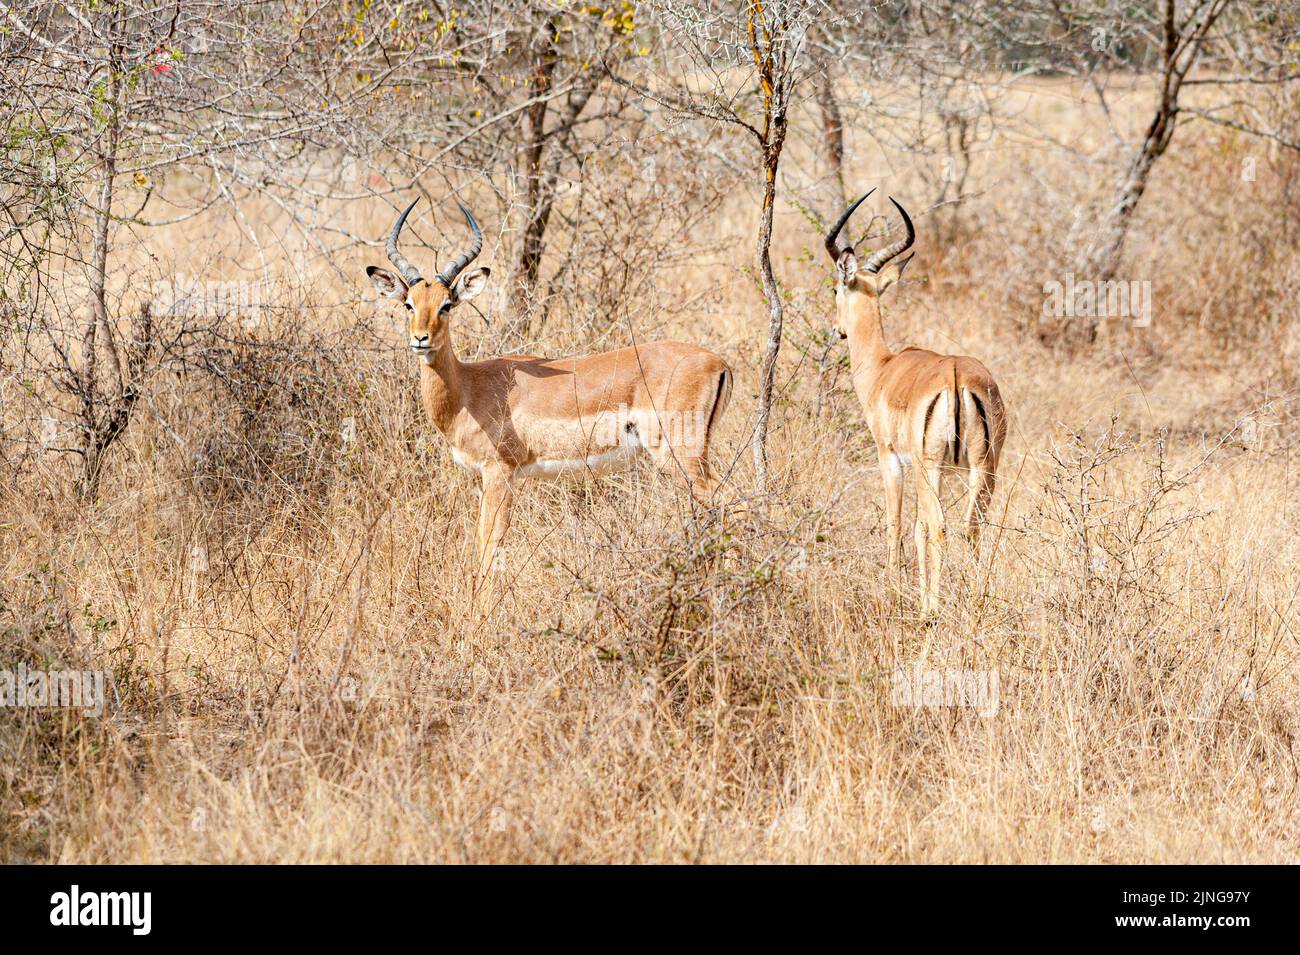 Dos impalas en su hábitat silvestre, Sudáfrica, observación de vida silvestre Foto de stock